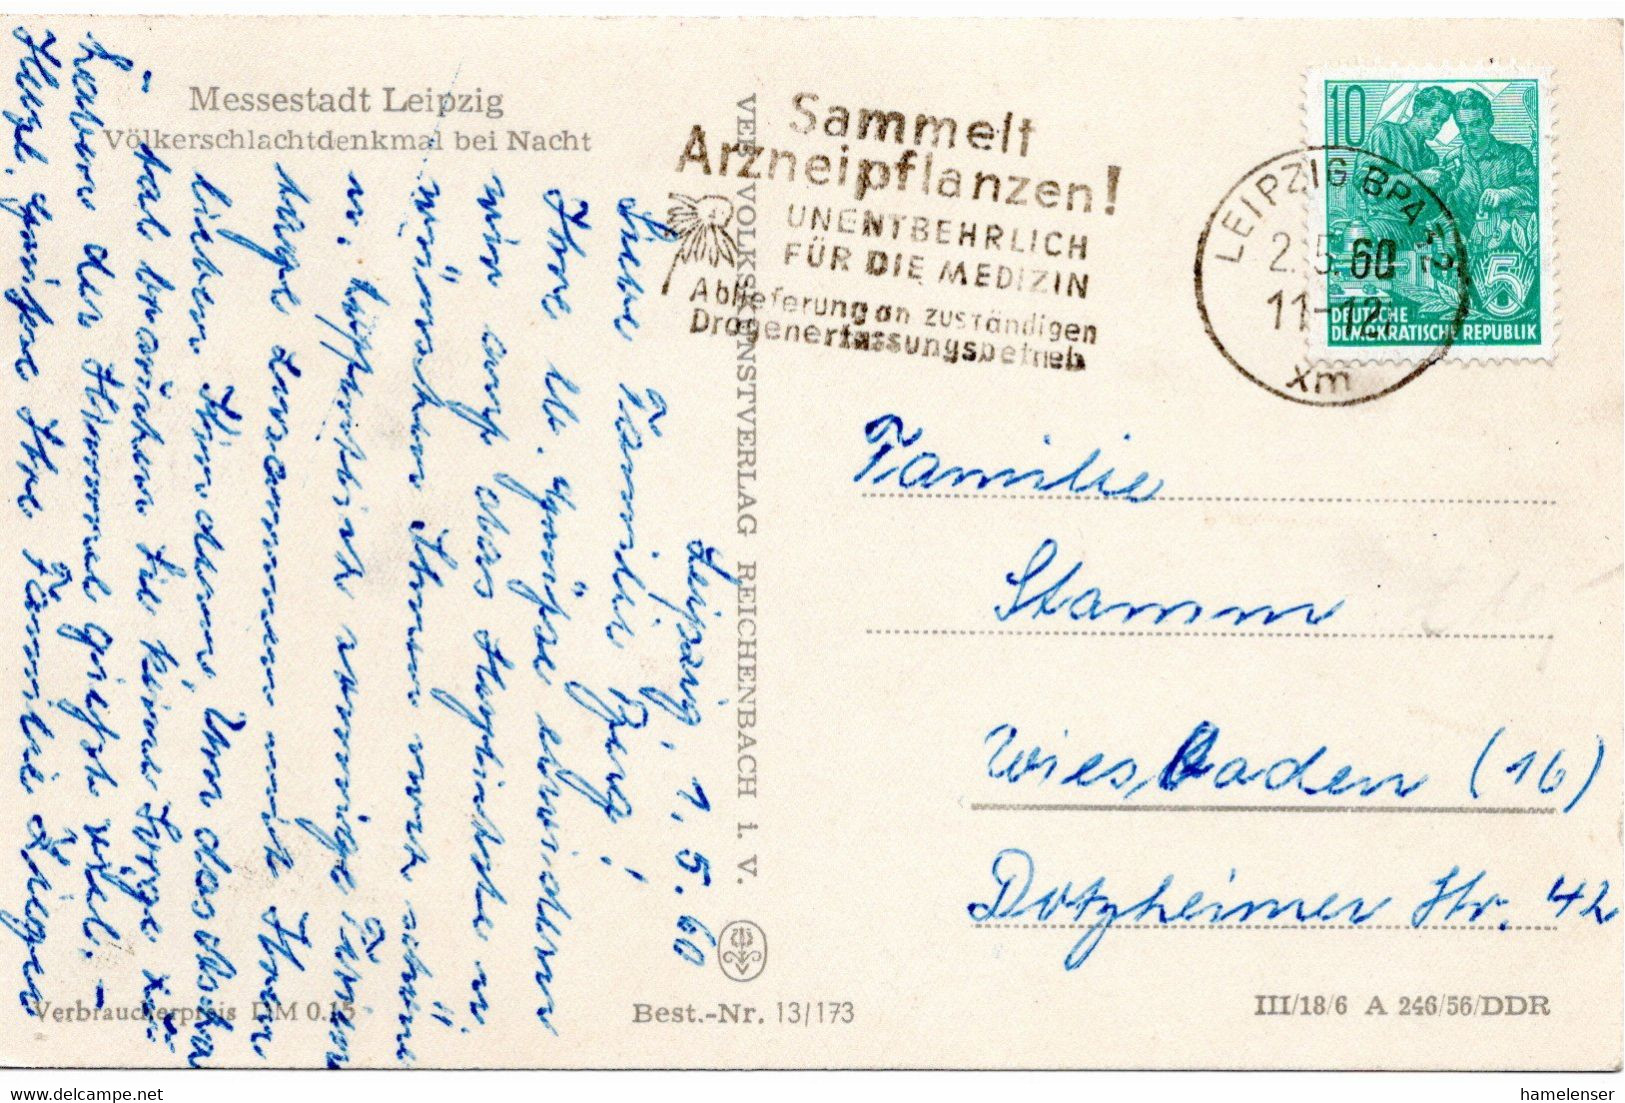 54715 - DDR - 1960 - 10Pfg Fuenfjahrplan EF A AnsKte LEIPZIG - SAMMELT ARZNEIPFLANZEN ... -> Westdeutschland - Medicinal Plants